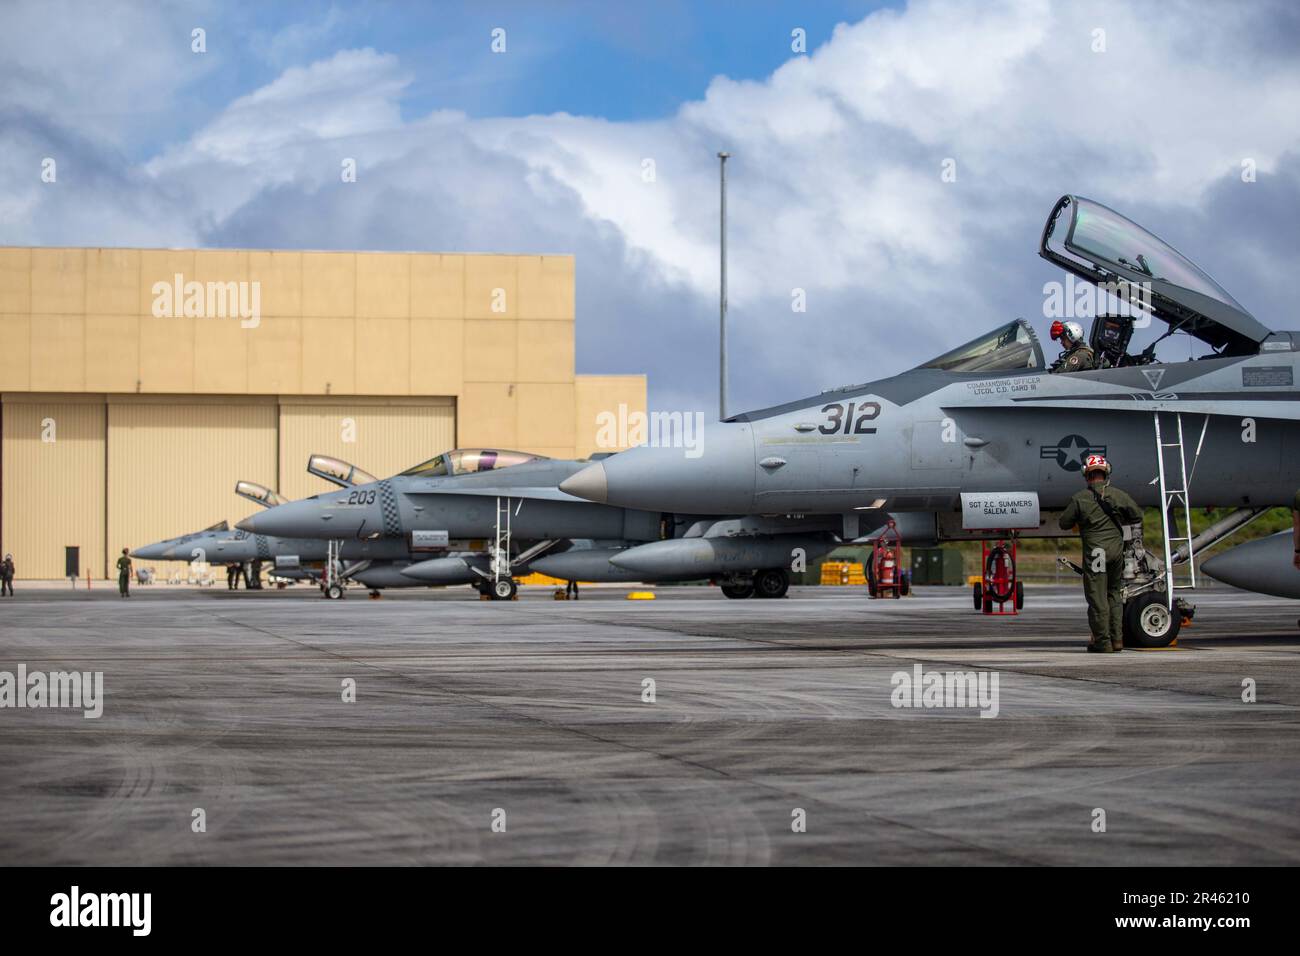 ÉTATS-UNIS Des aéronefs du corps maritime F/A-18 Hornet de l'escadron d'attaque de chasseurs marins 312 sont assis sur la ligne de vol après les opérations de vol à la base aérienne d'Andersen, à Guam, le 21 février 2023. Cope North 2023, un exercice multilatéral de formation sur le terrain, a amélioré les compétences essentielles de préparation des pays partenaires et l'interopérabilité grâce à l'exécution de divers ensembles de missions, y compris la supériorité aérienne, l'interdiction, la guerre électronique, le transport aérien tactique et le ravitaillement en carburant aérien. Banque D'Images